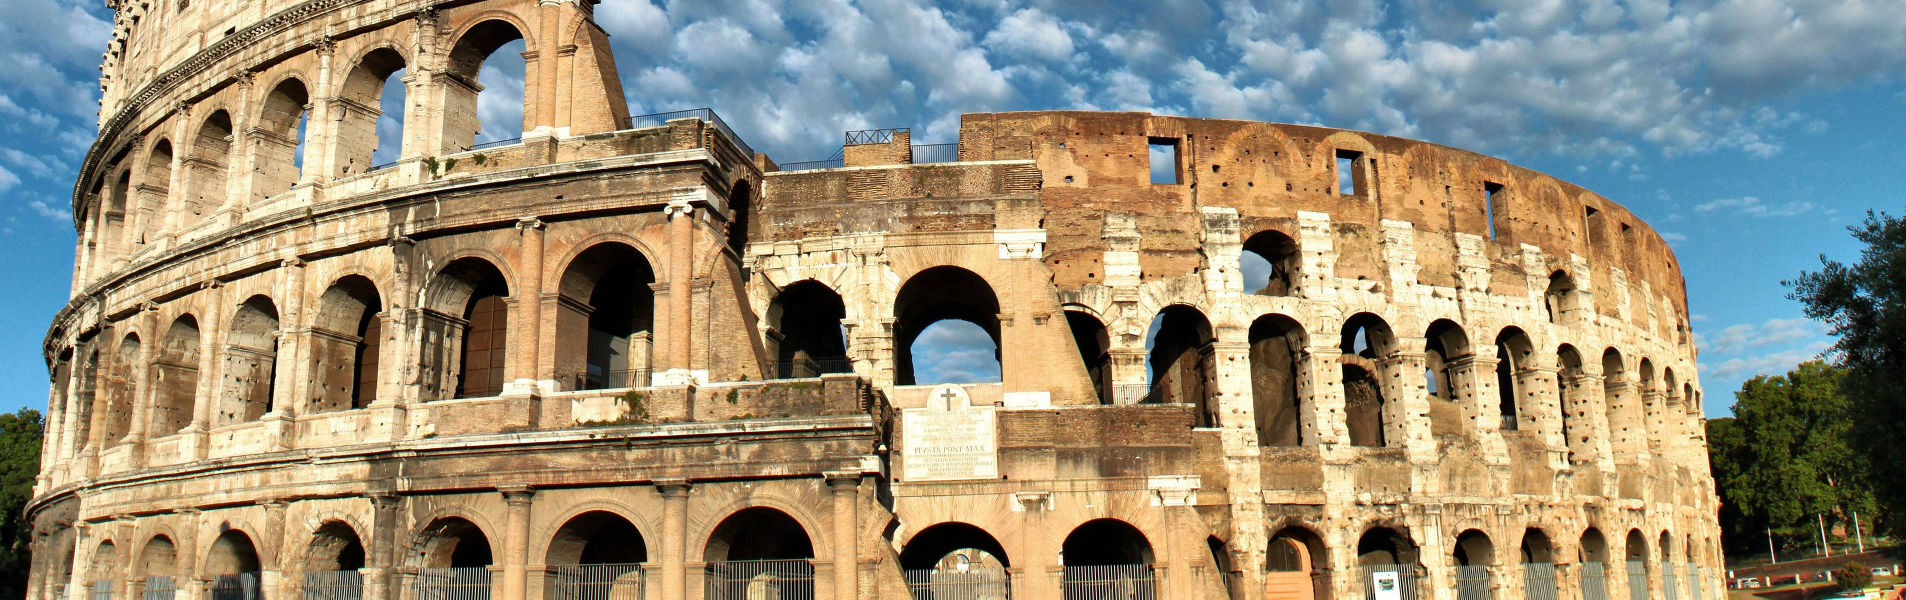 El Coliseo, 2000 años de historia en el corazón de Roma